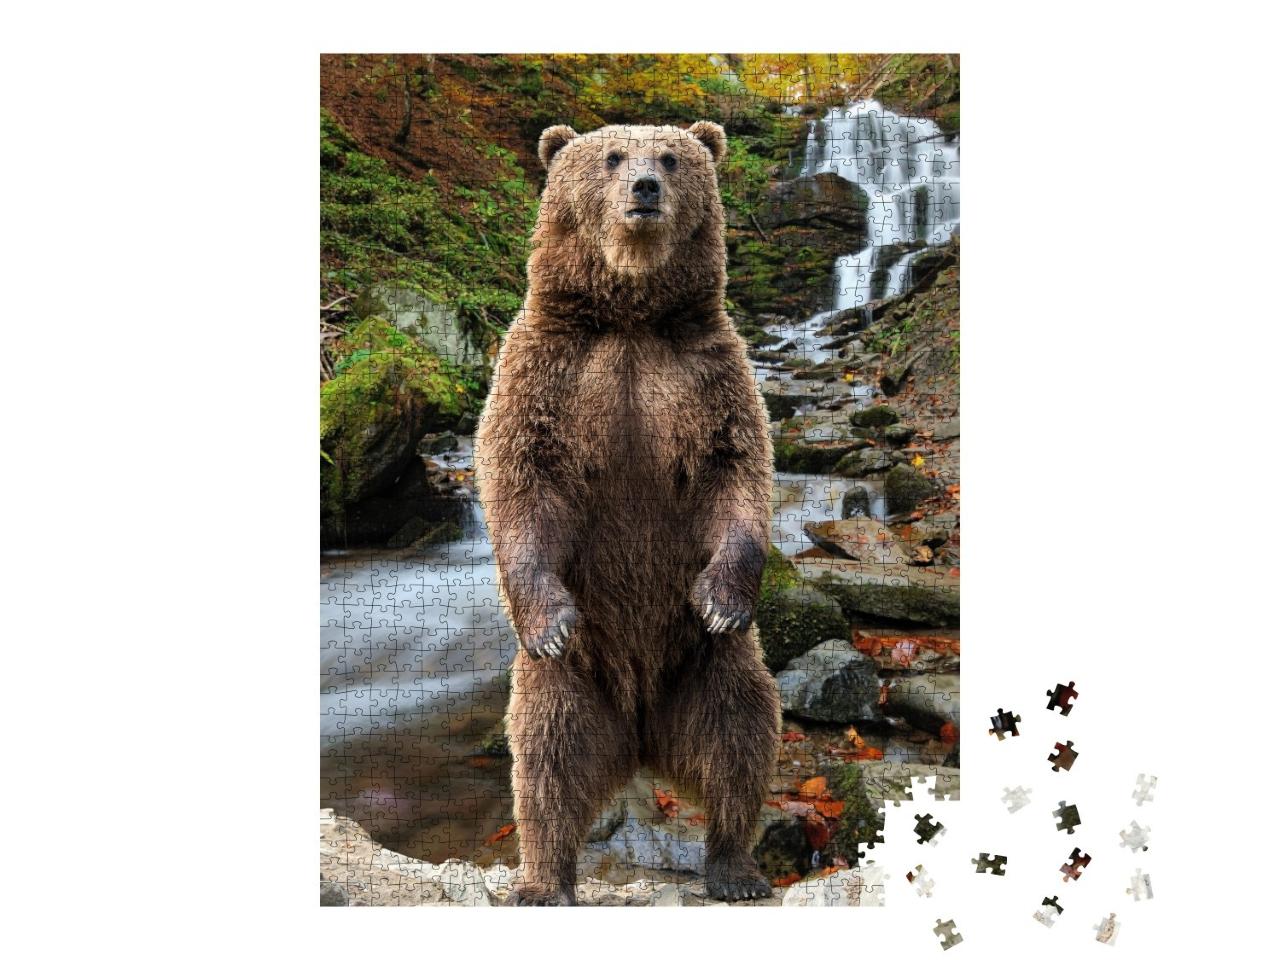 Puzzle de 1000 pièces « Un ours brun dans la forêt d'automne »